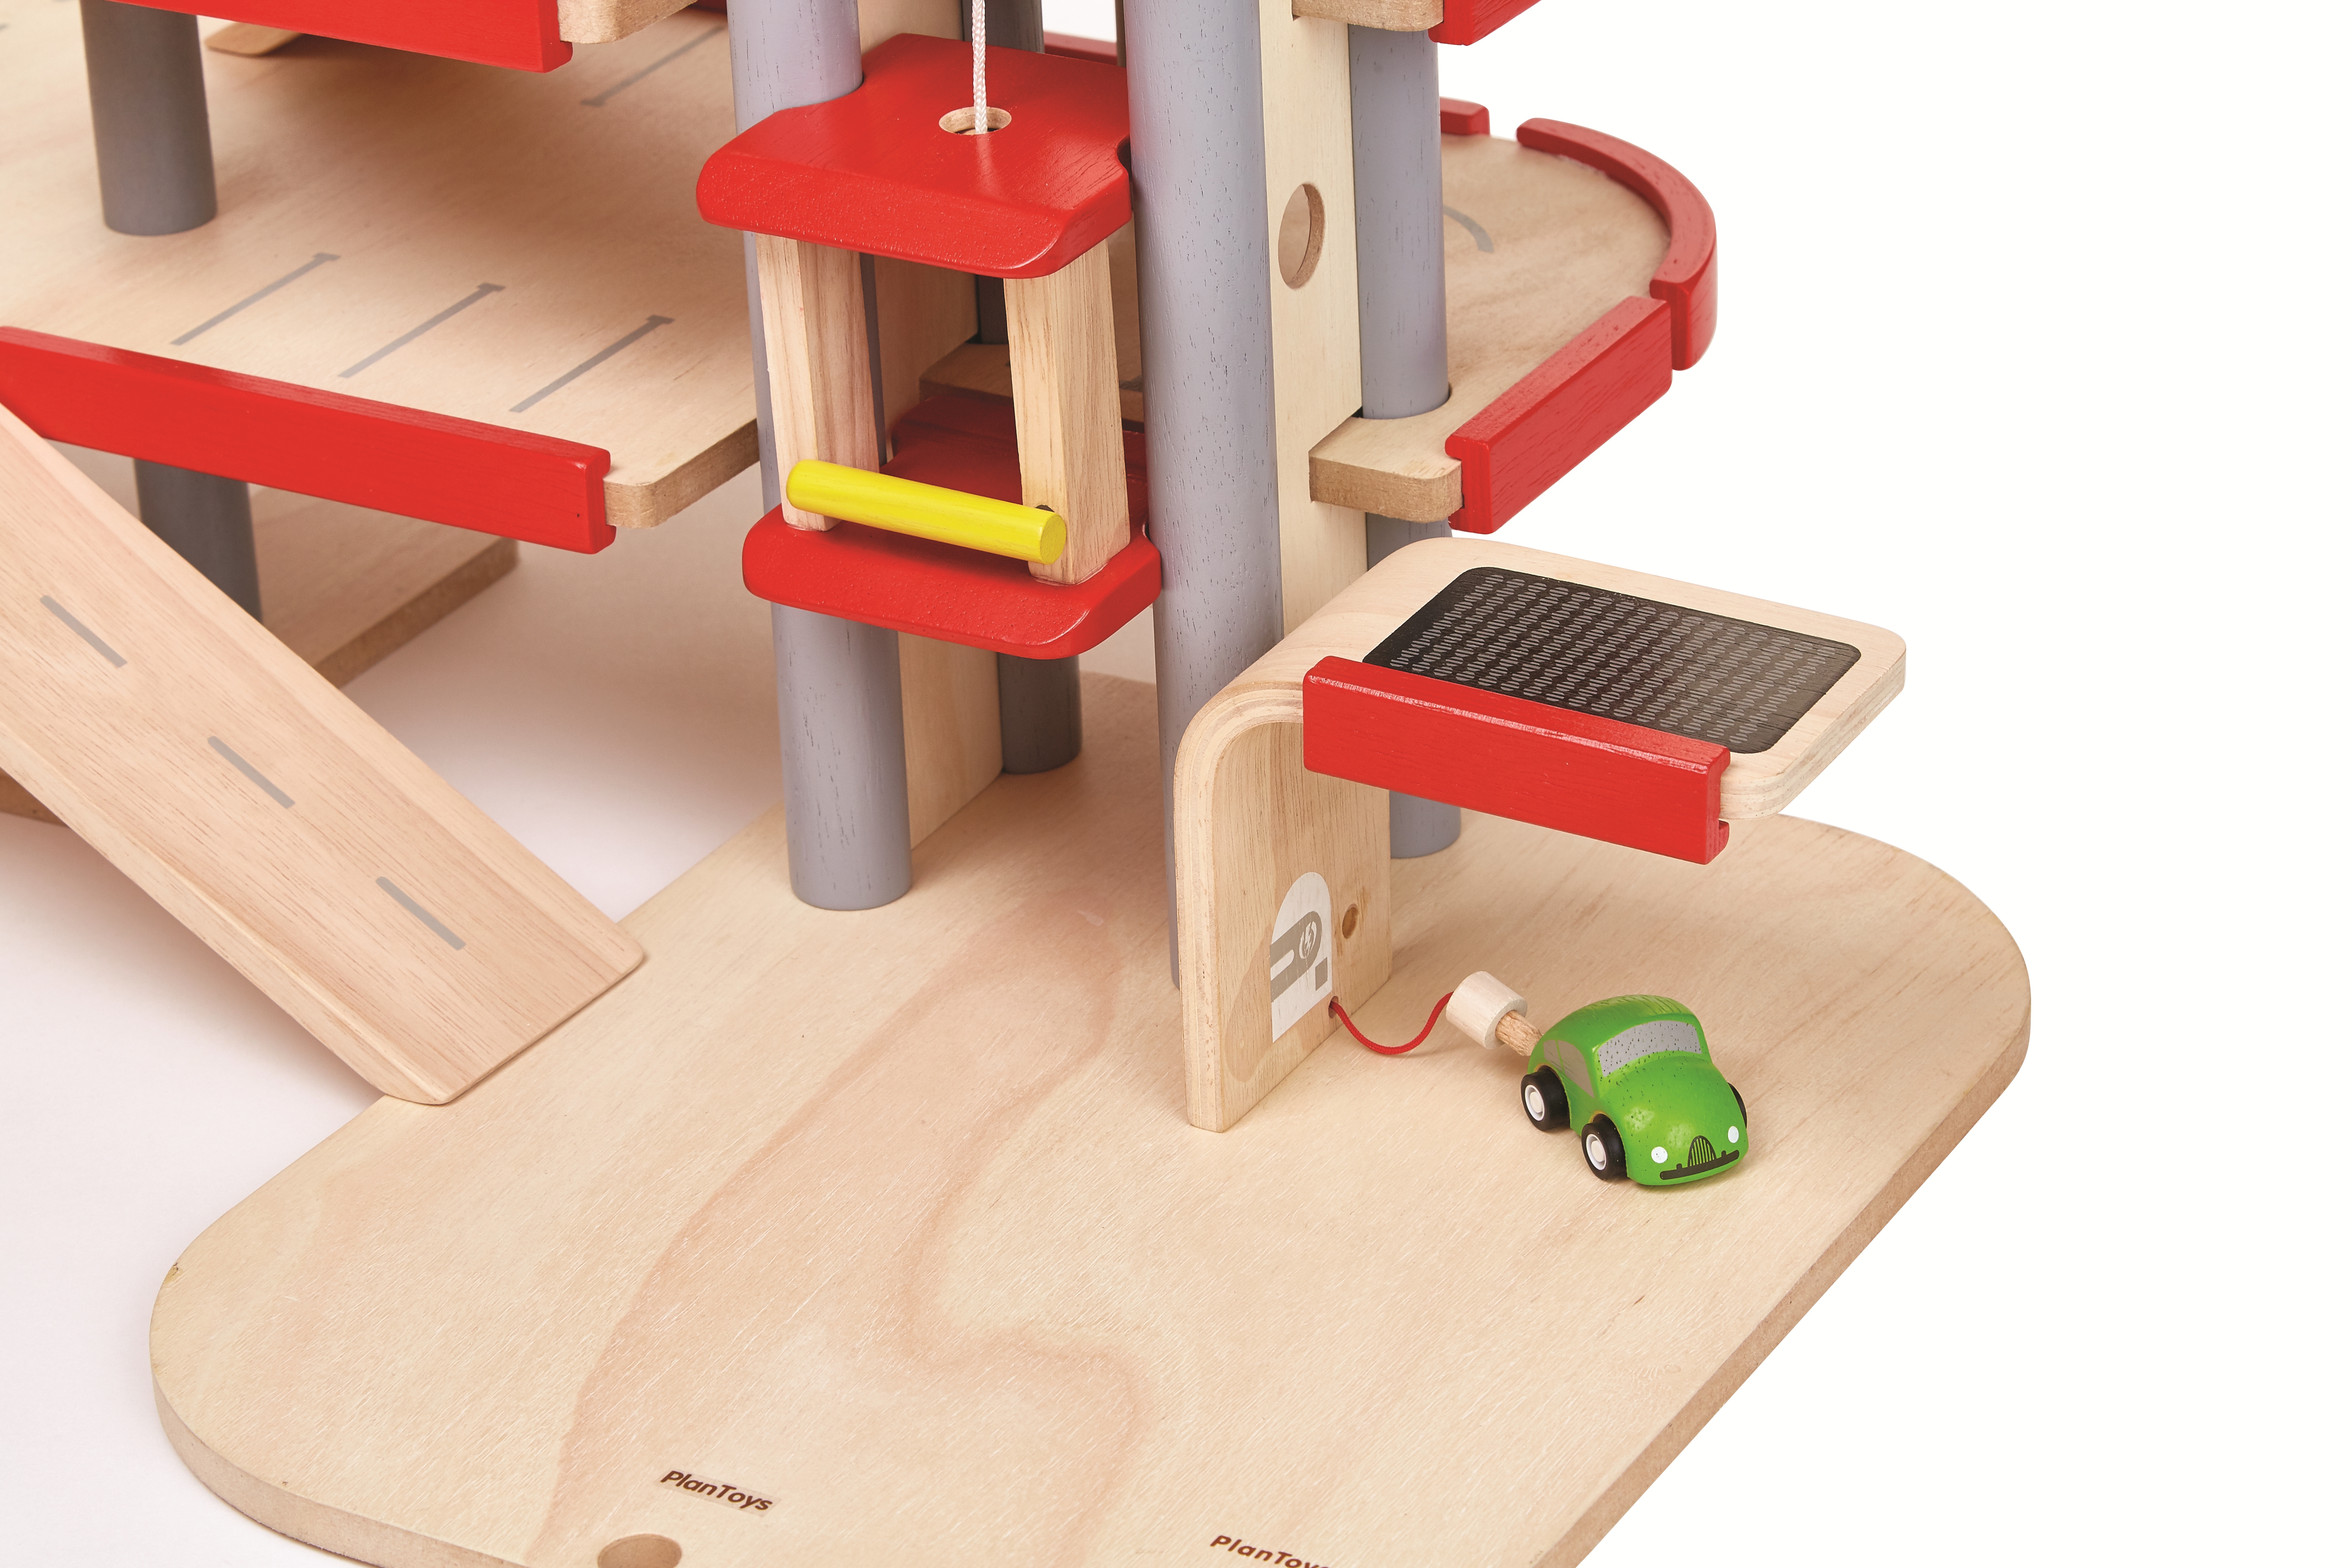 Parking garage Plan Toys pour chambre enfant - Les Enfants du Design